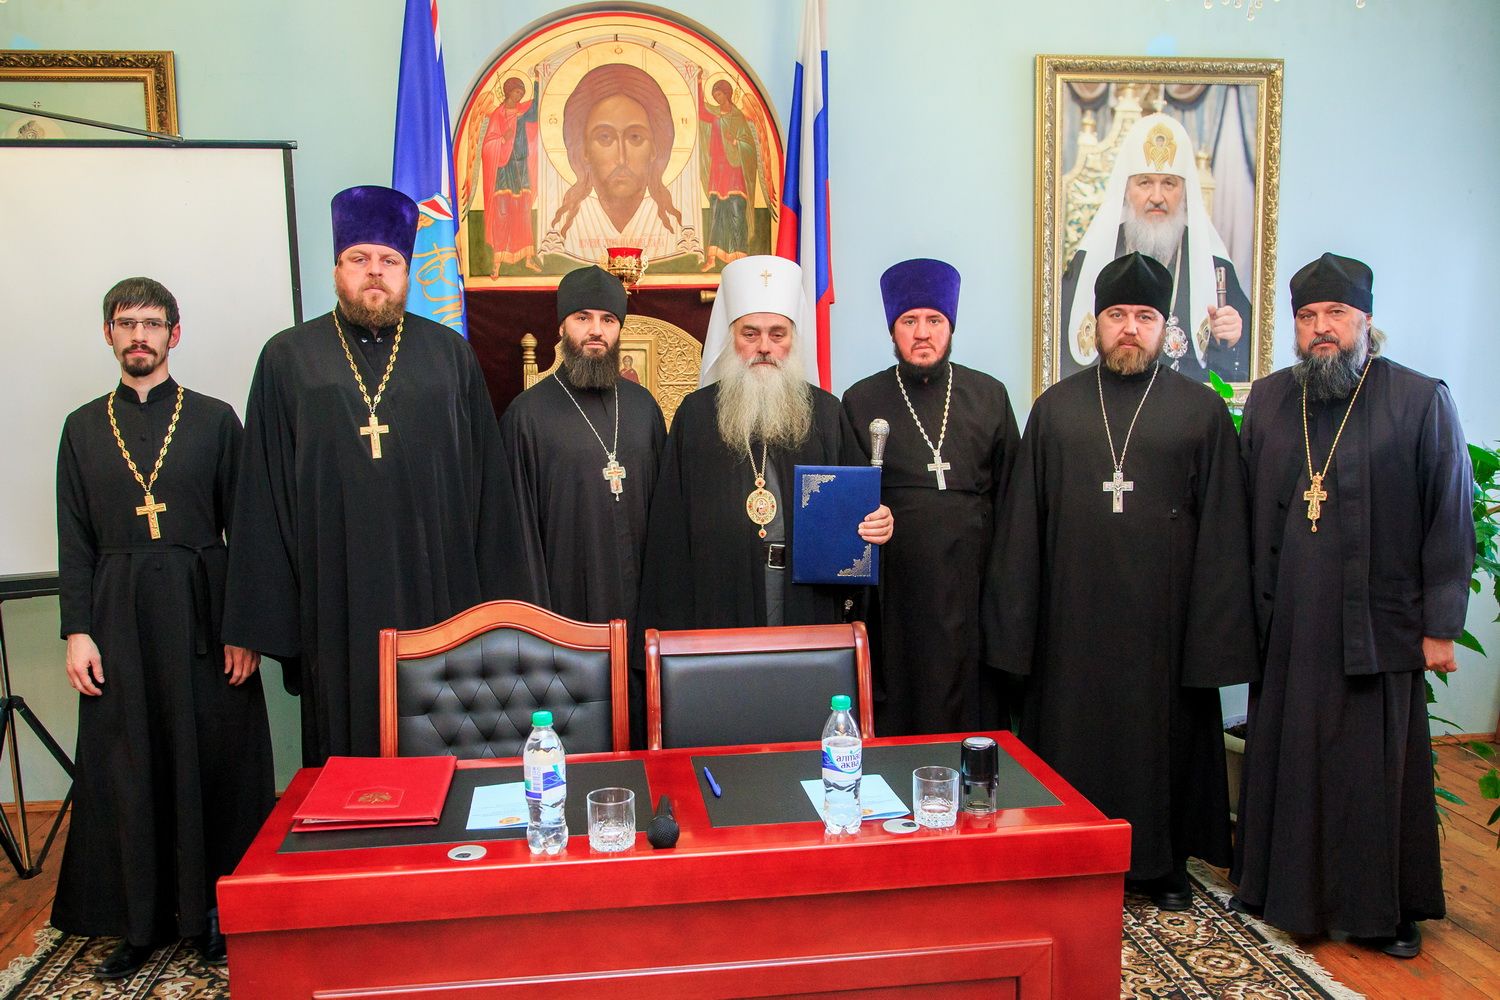 Благочинный Барнаульского городского округа протоиерей Андрей Басов подписал соглашение о сотрудничестве между Барнаульской духовной семинарией и благочинными церковных округов